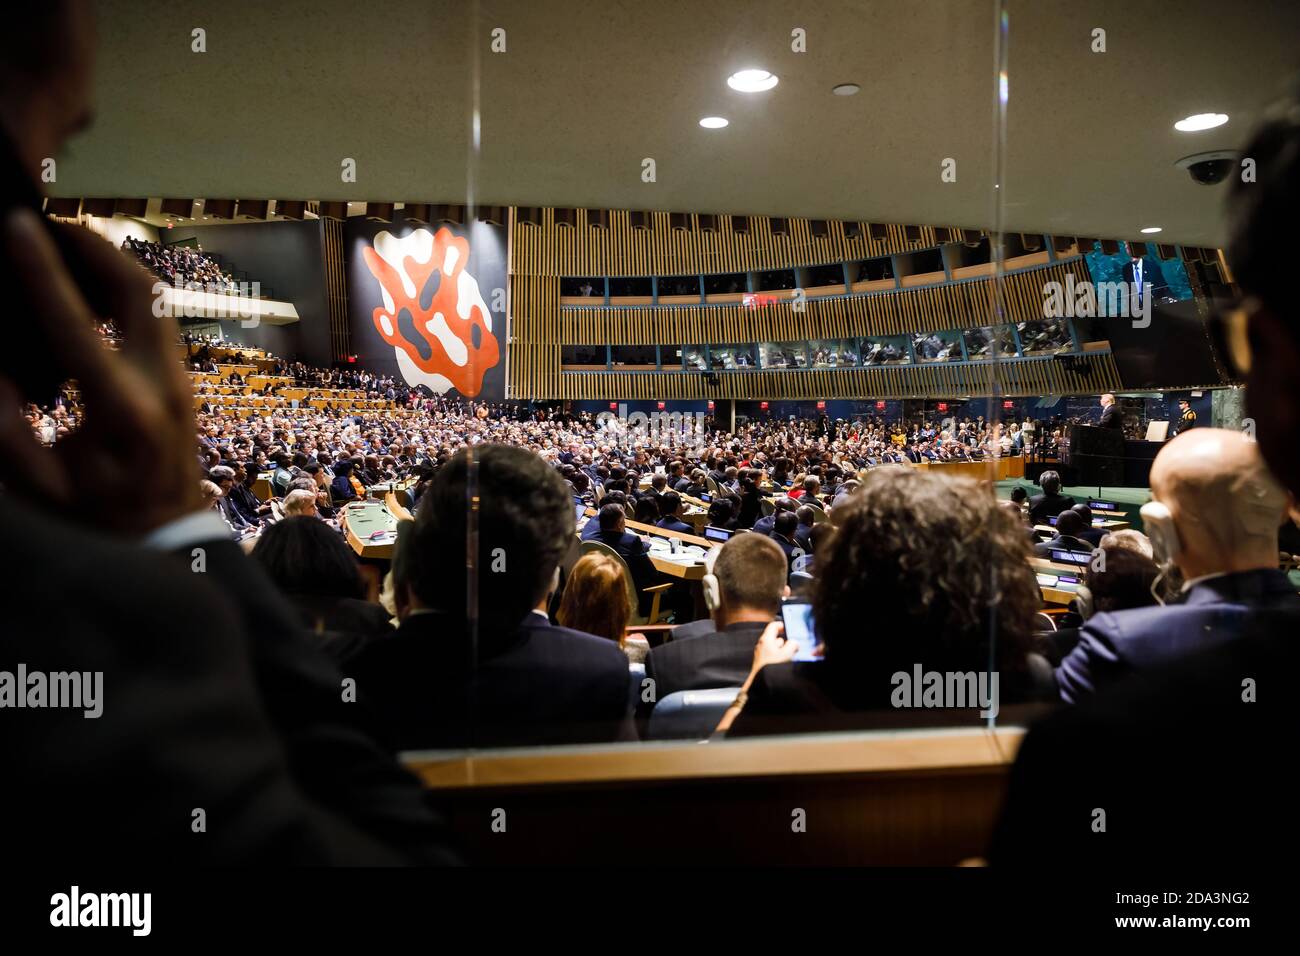 NUEVA YORK, EE.UU. - 19 de septiembre de 2017: Sala de Conferencias de la Organización de las Naciones Unidas durante un discurso del Presidente de los Estados Unidos de América Donald Trump Foto de stock